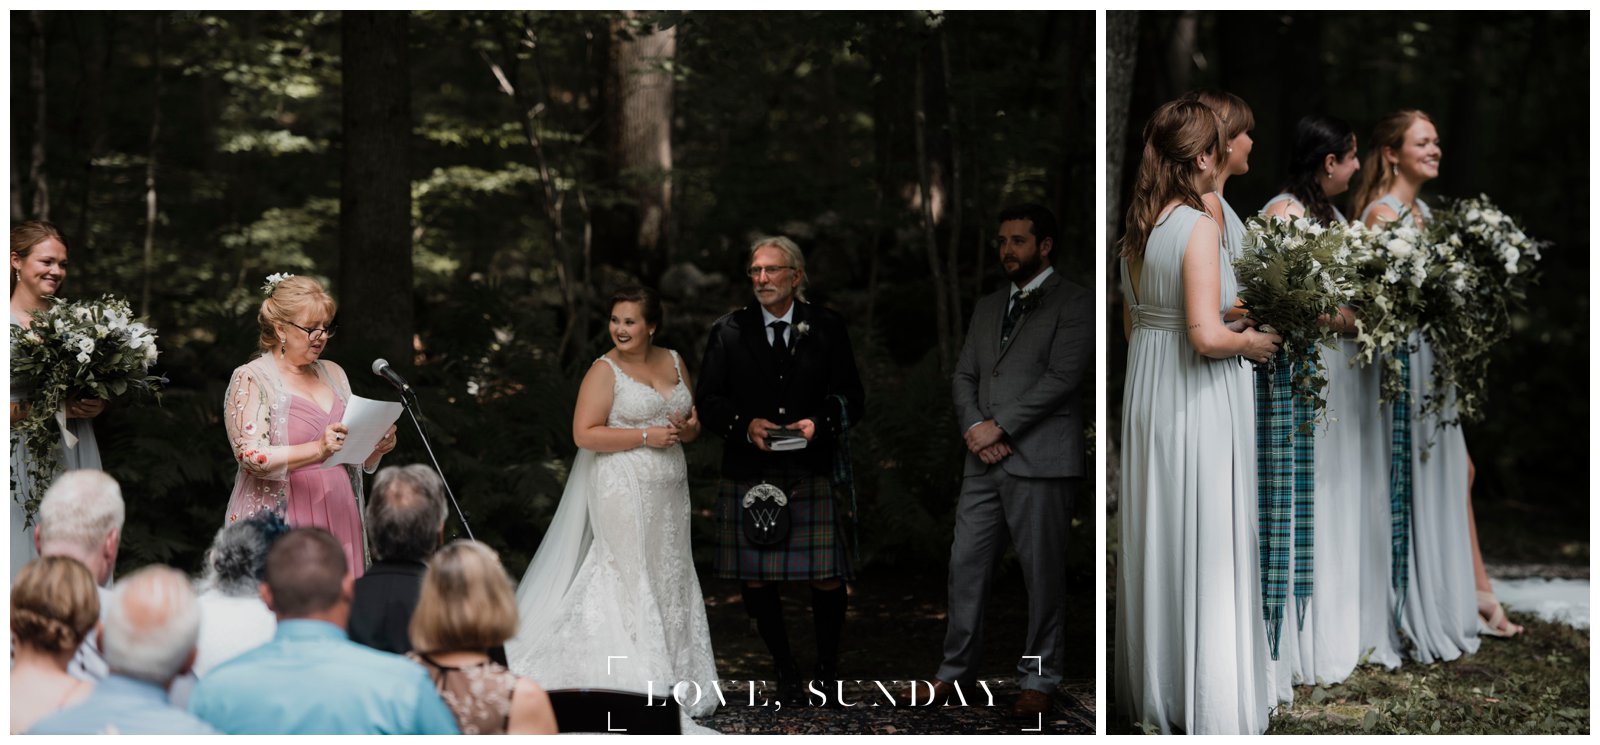 enchanted forest wedding, love Sunday photo, mystic ct wedding photographer